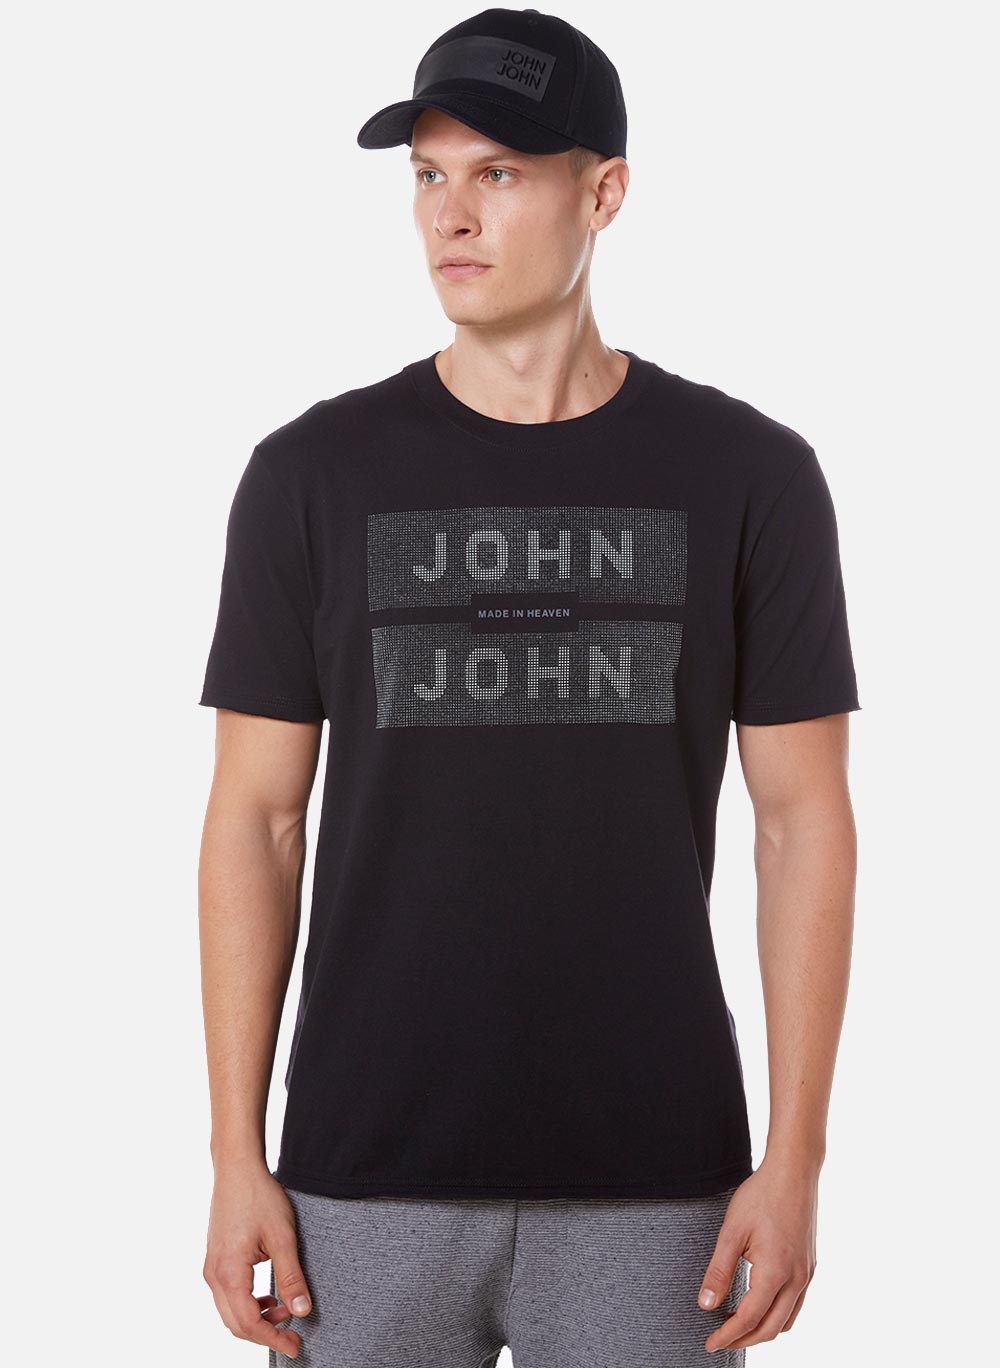 Camiseta John John Assinatura